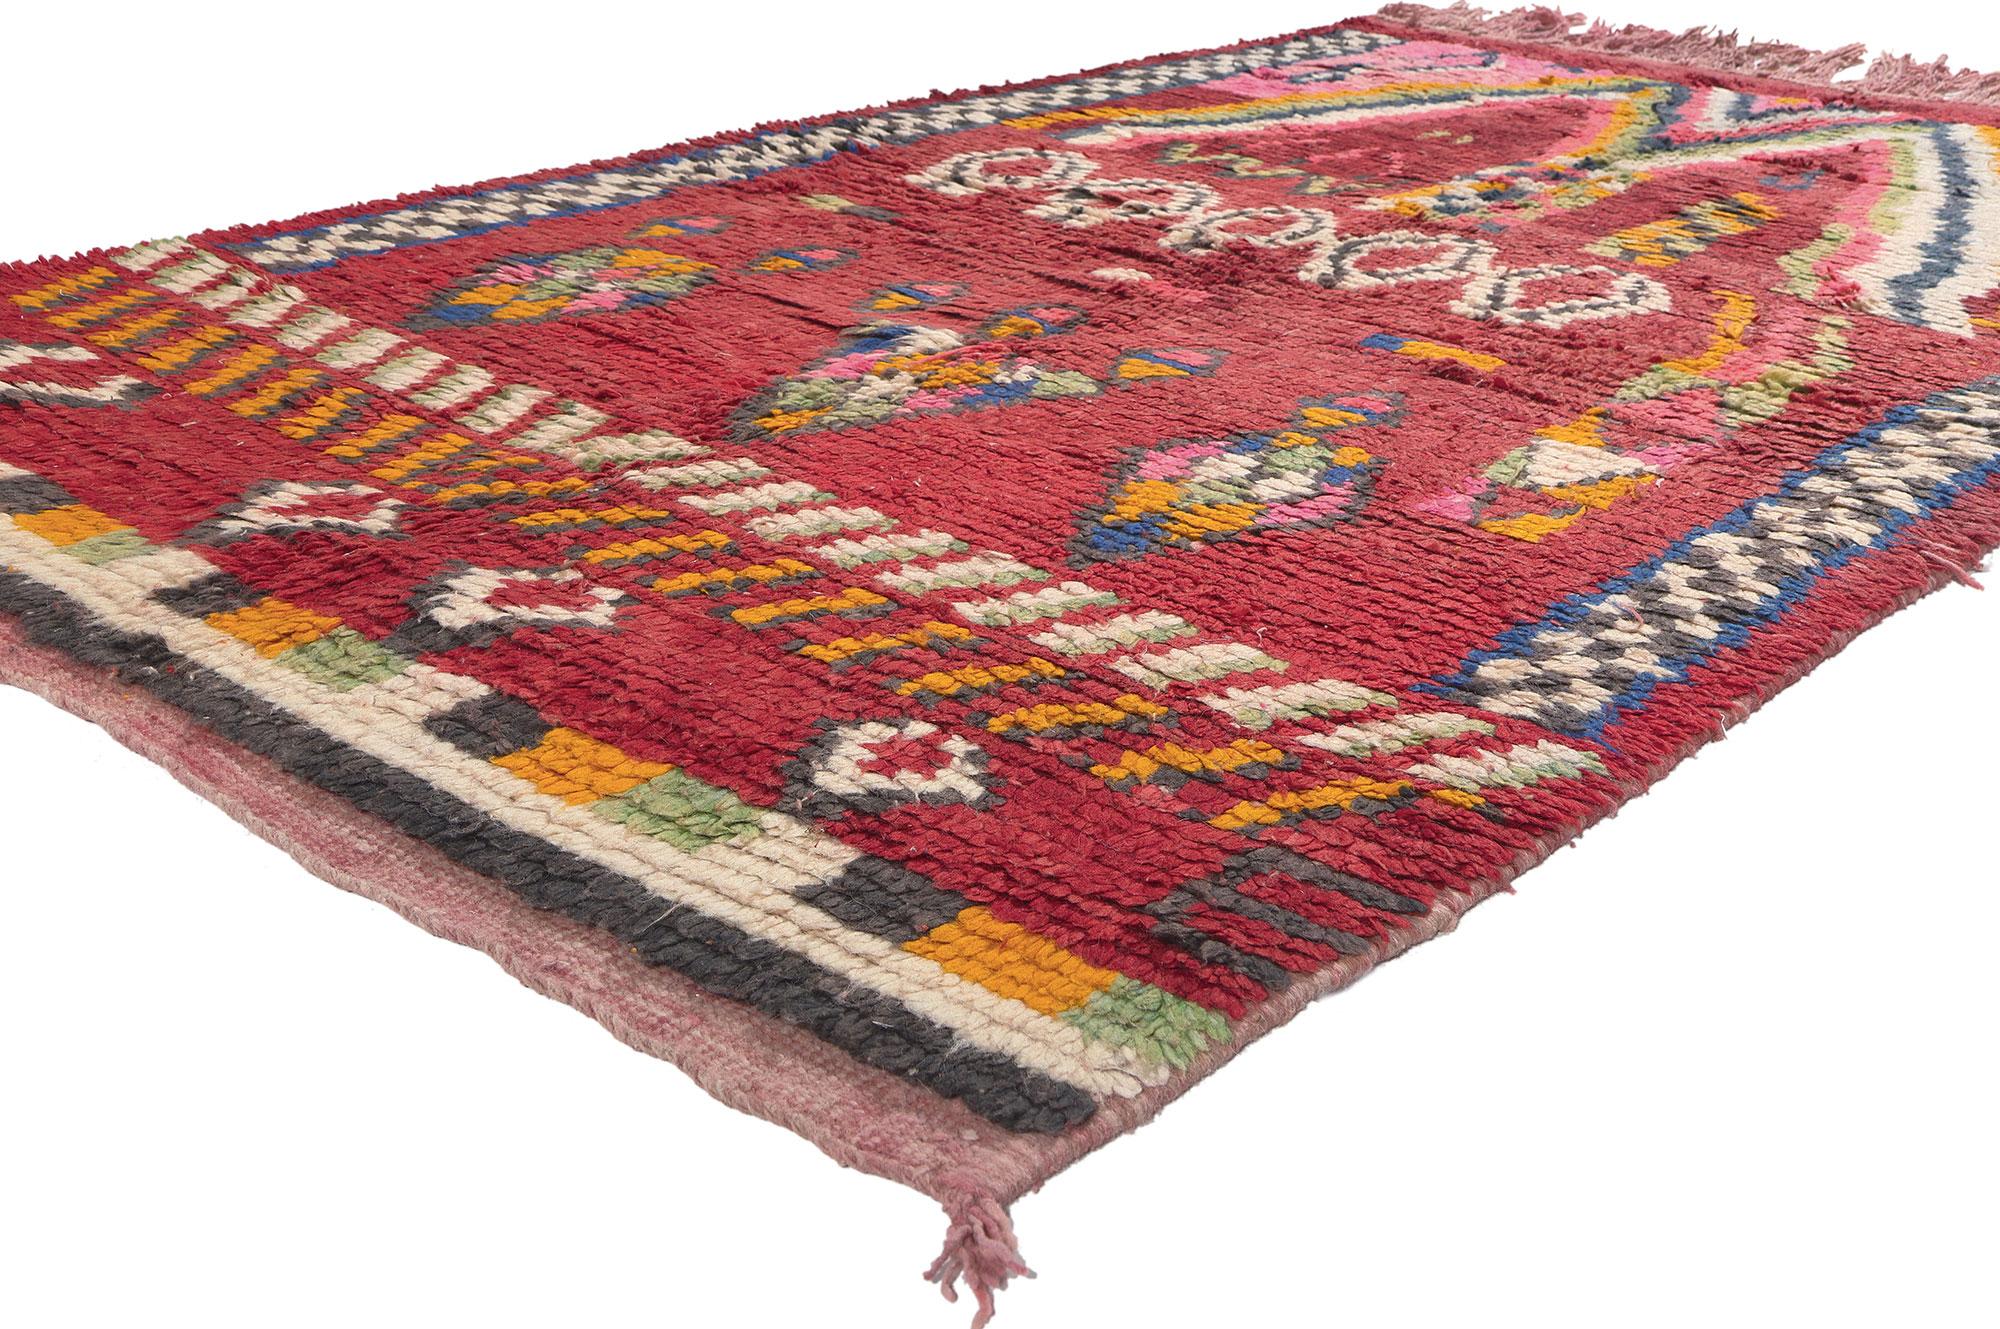 20277 Tapis marocain Vintage Rehamna, 05'00 x 08'01. Des plaines ensoleillées de Rehamna, à l'est de Marrakech, émerge un tapis qui défie les attentes avec ses motifs riches et éclectiques. Immergé dans une esthétique maximaliste, ce tapis marocain